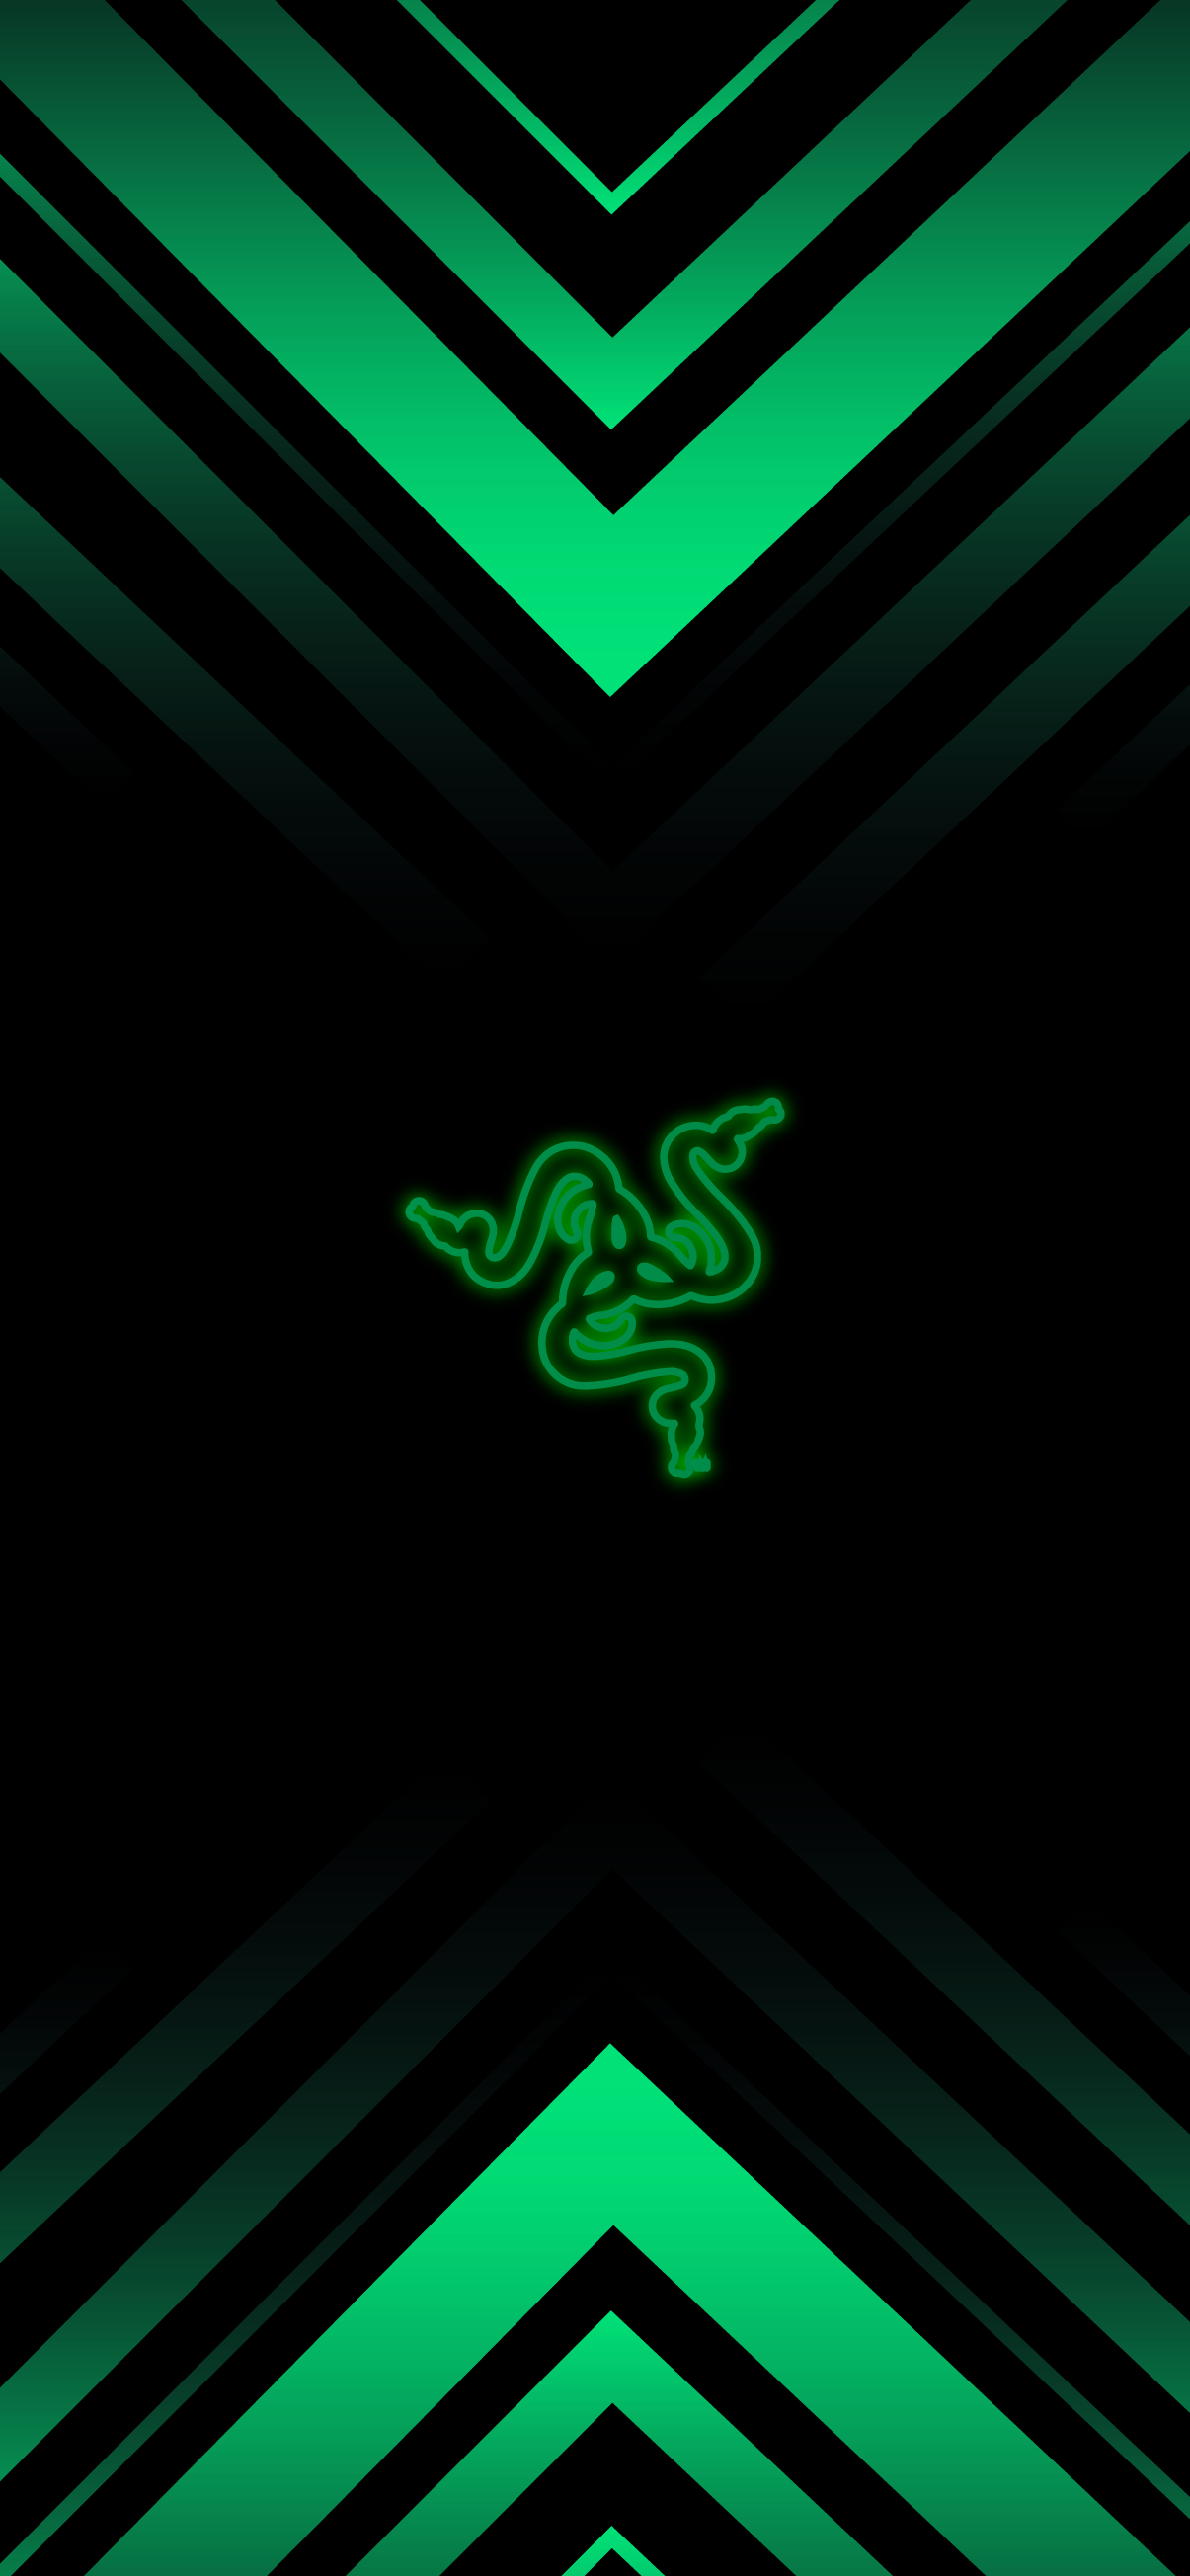 Razer Green Gamer Wallpapers